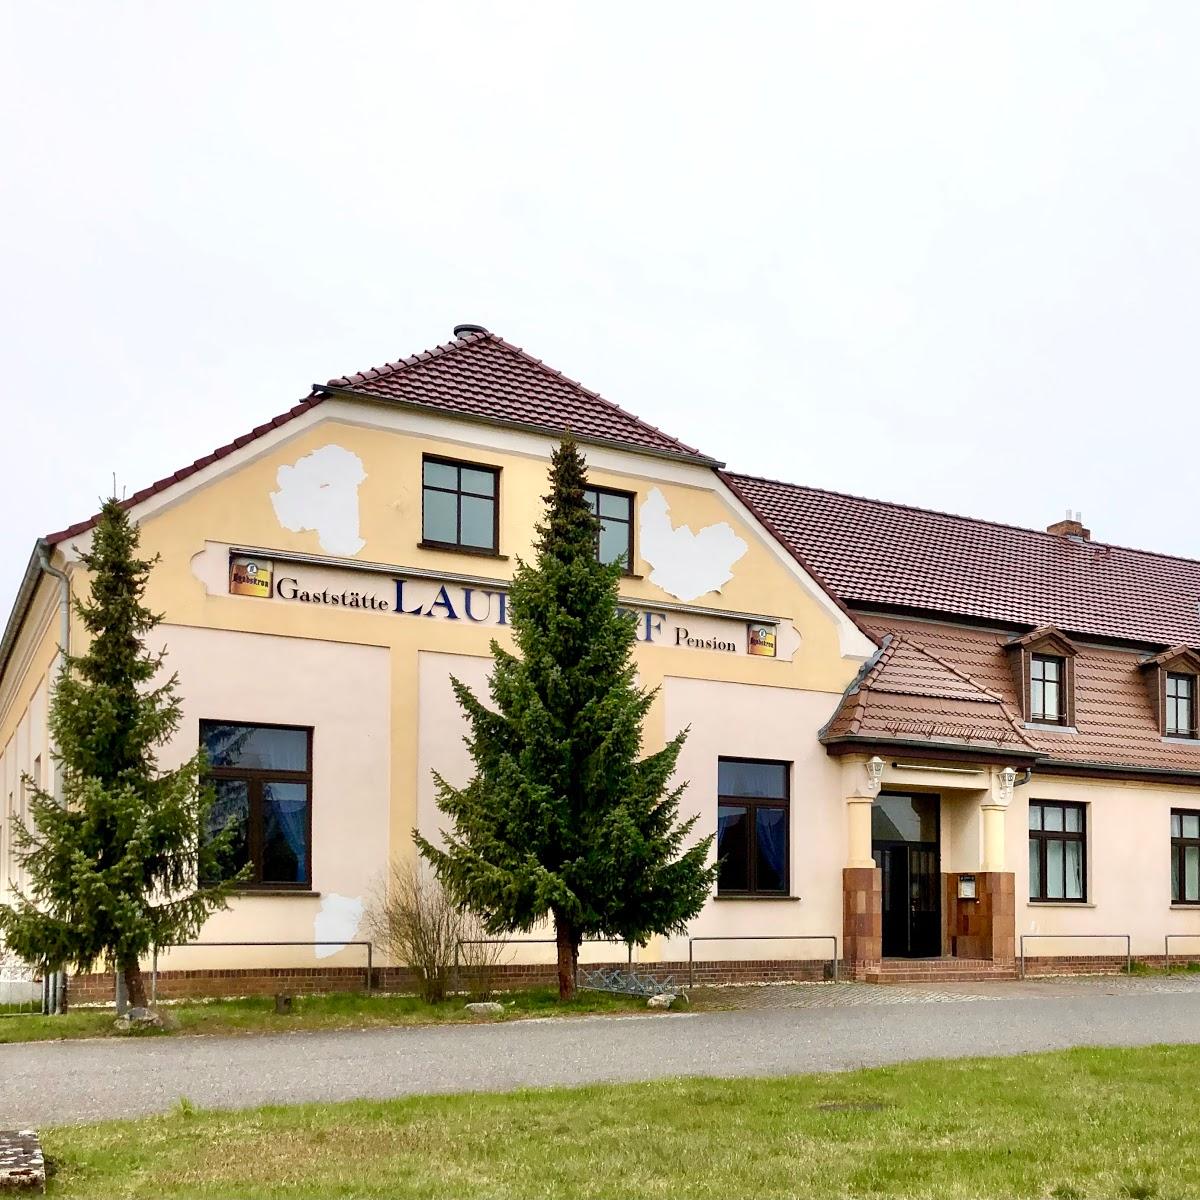 Restaurant "Gaststätte Laubsdorf und Pension Triple R" in Neuhausen-Spree